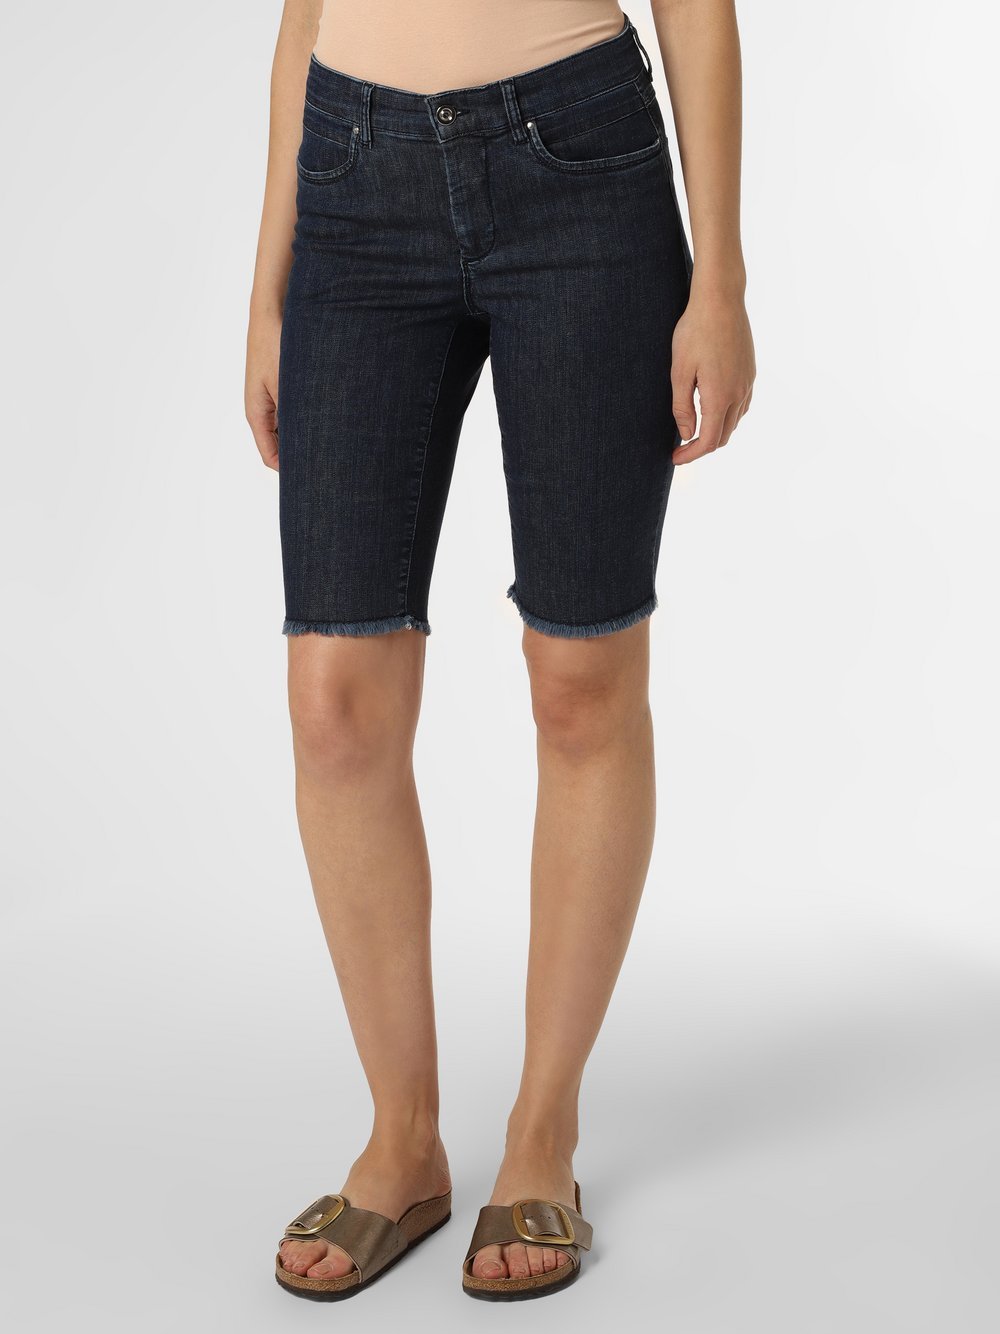 Olivia - Damskie spodenki jeansowe, niebieski